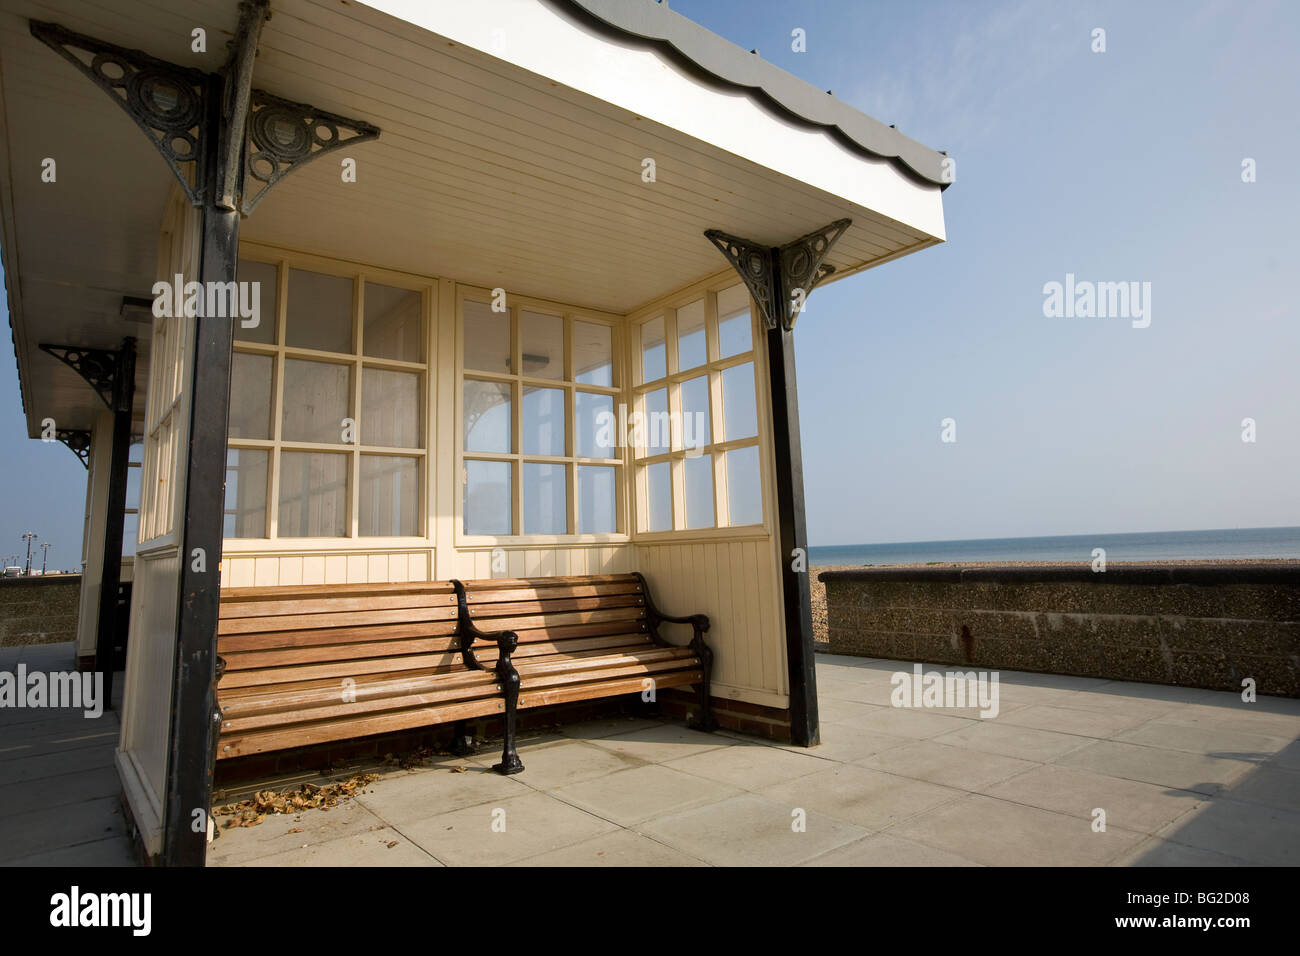 seafront shelter Worthing beach, sheltered seat, South Coast, England Stock Photo